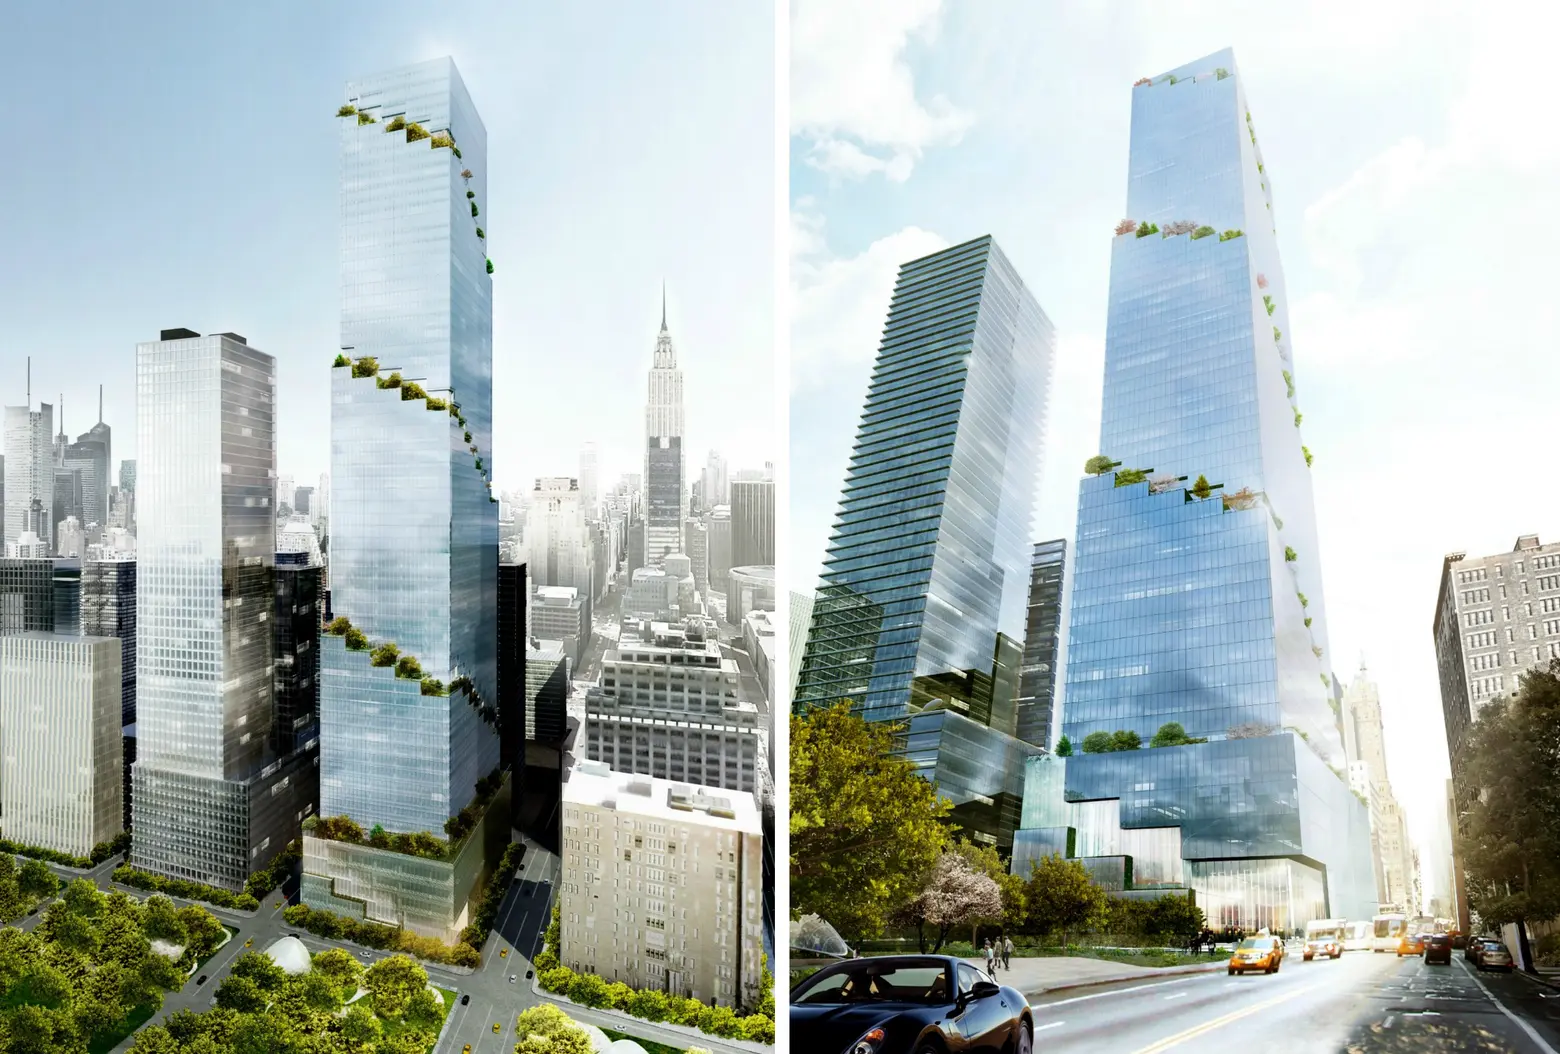 Tishman Speyer officially files plans for Bjarke Ingels’ $3.2B Hudson Yards tower